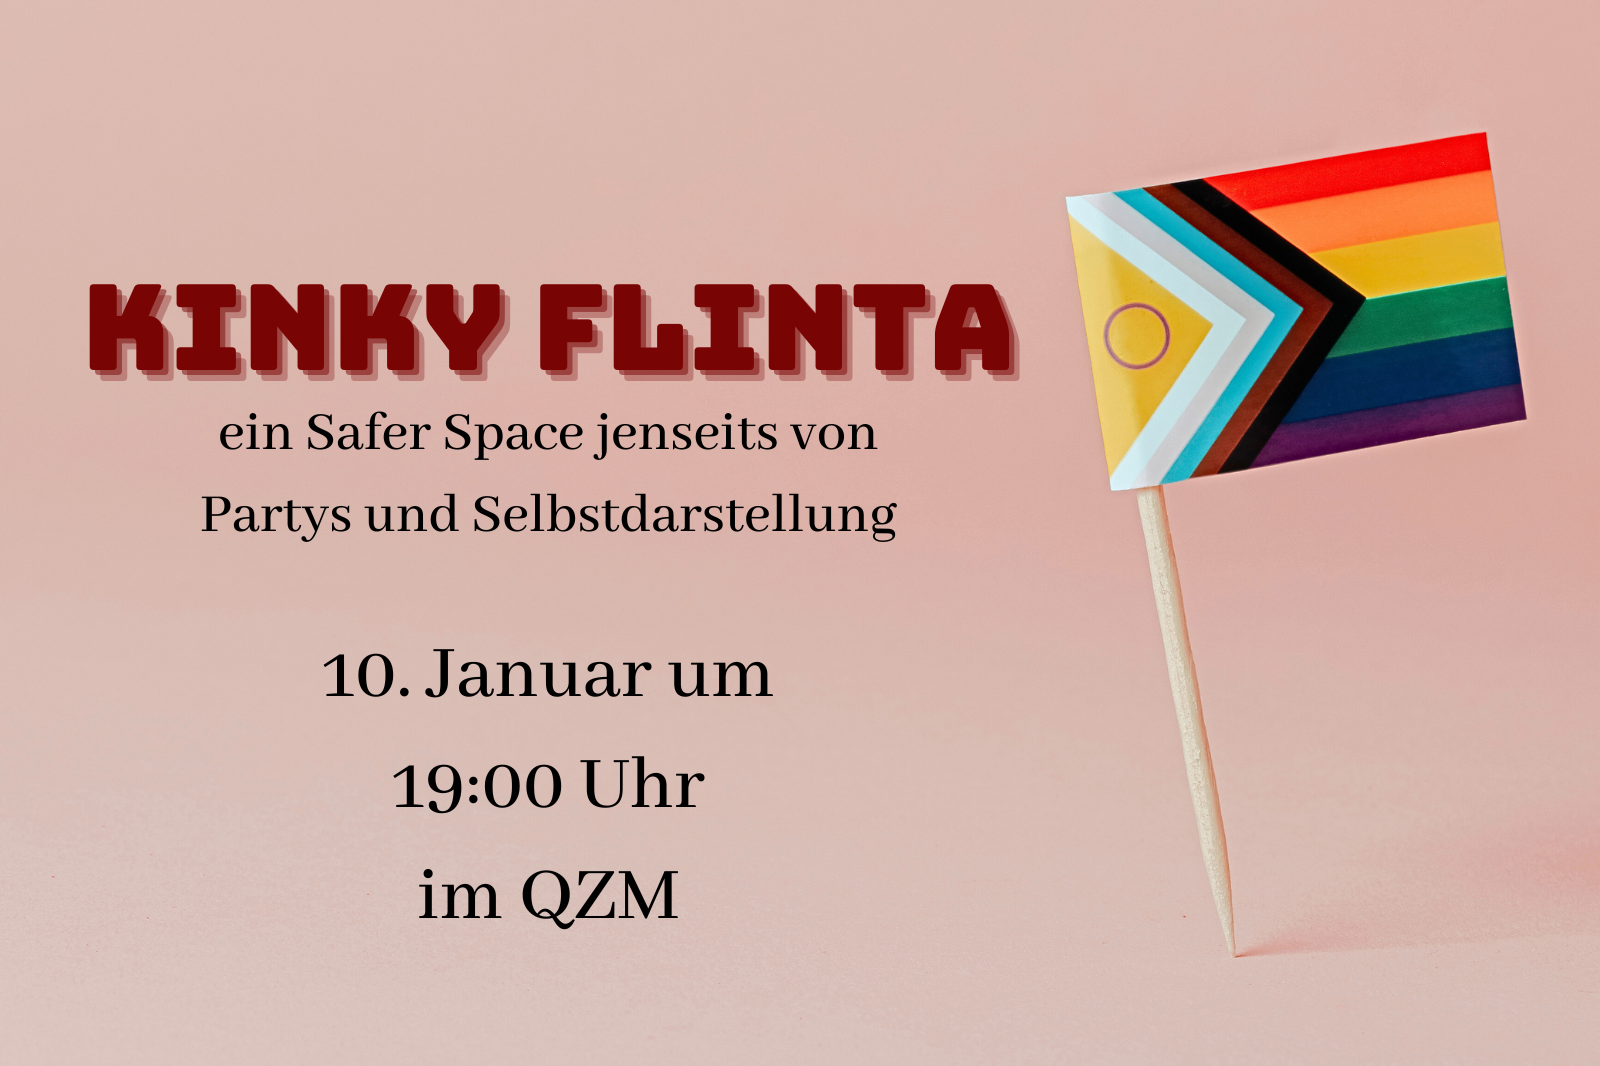 Kinky FLINTA: Ein safer Space jenseits von Partys und Selbstdarstellung" am 10. Januar um 19:00 im QZM. Neben dem Text ist die Progress Pride Flag abgebildet.